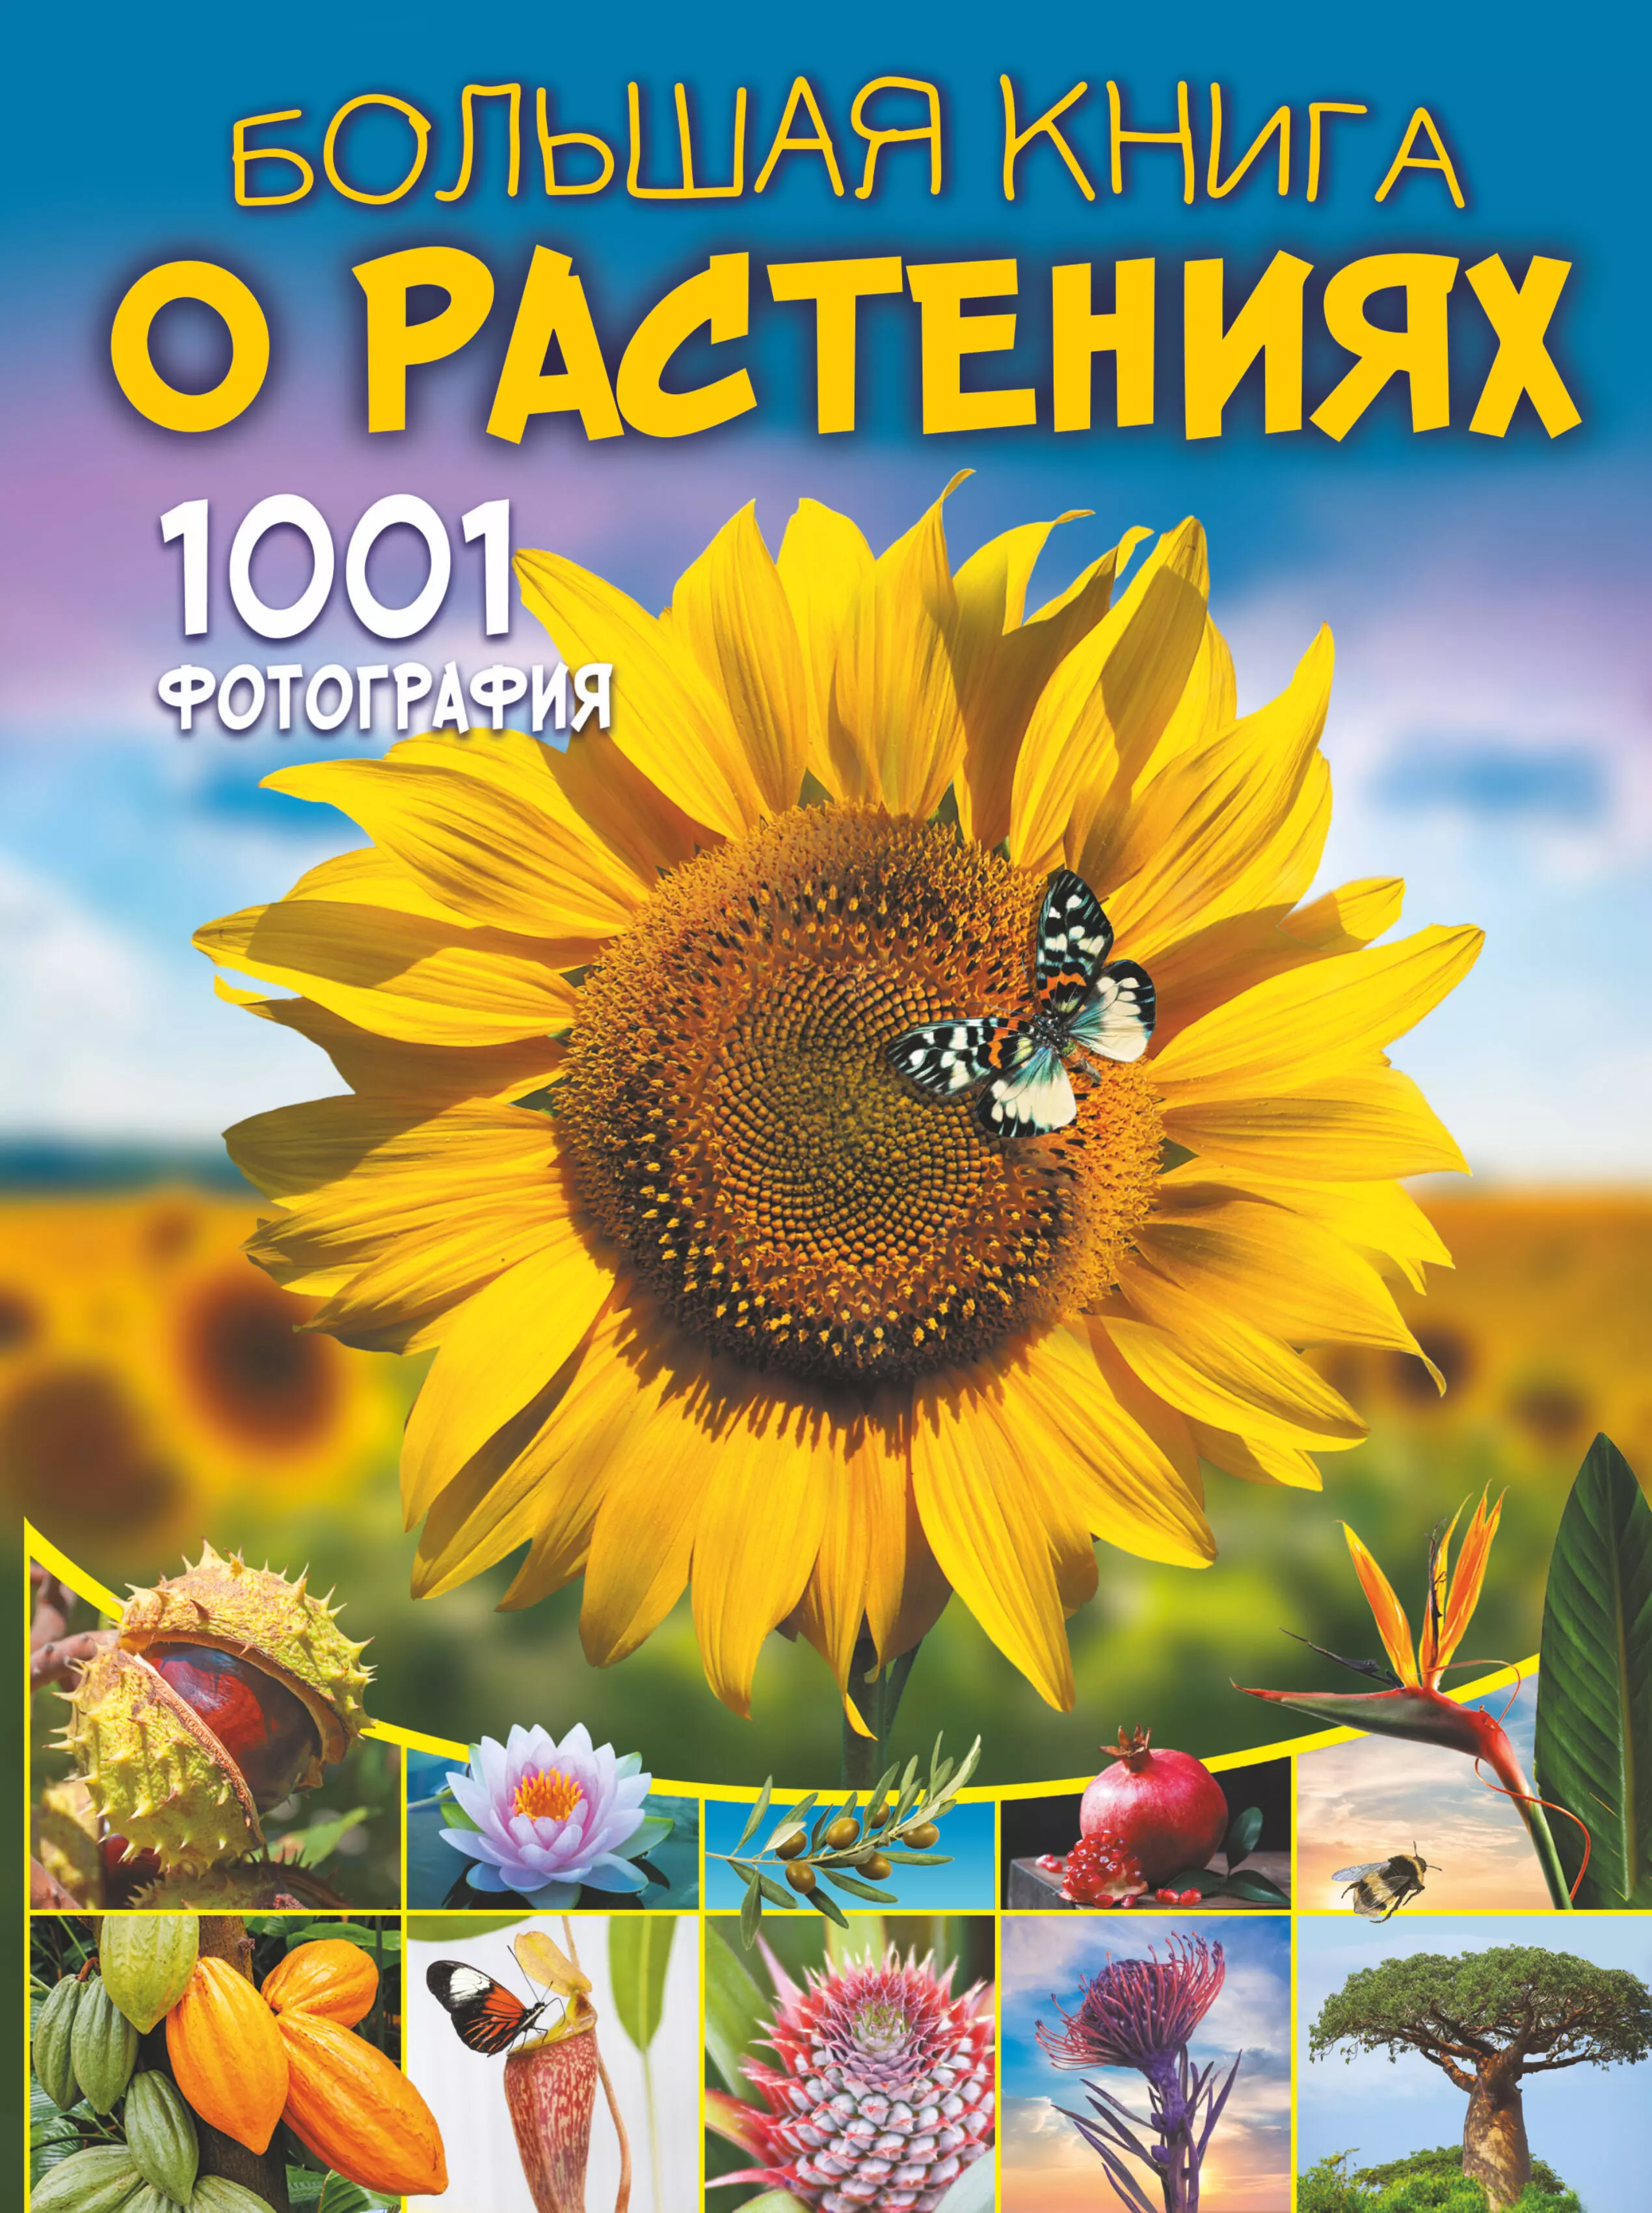 Большая книга о растениях. 1001 фотография большая книга о насекомых 1001 фотография спектор а а